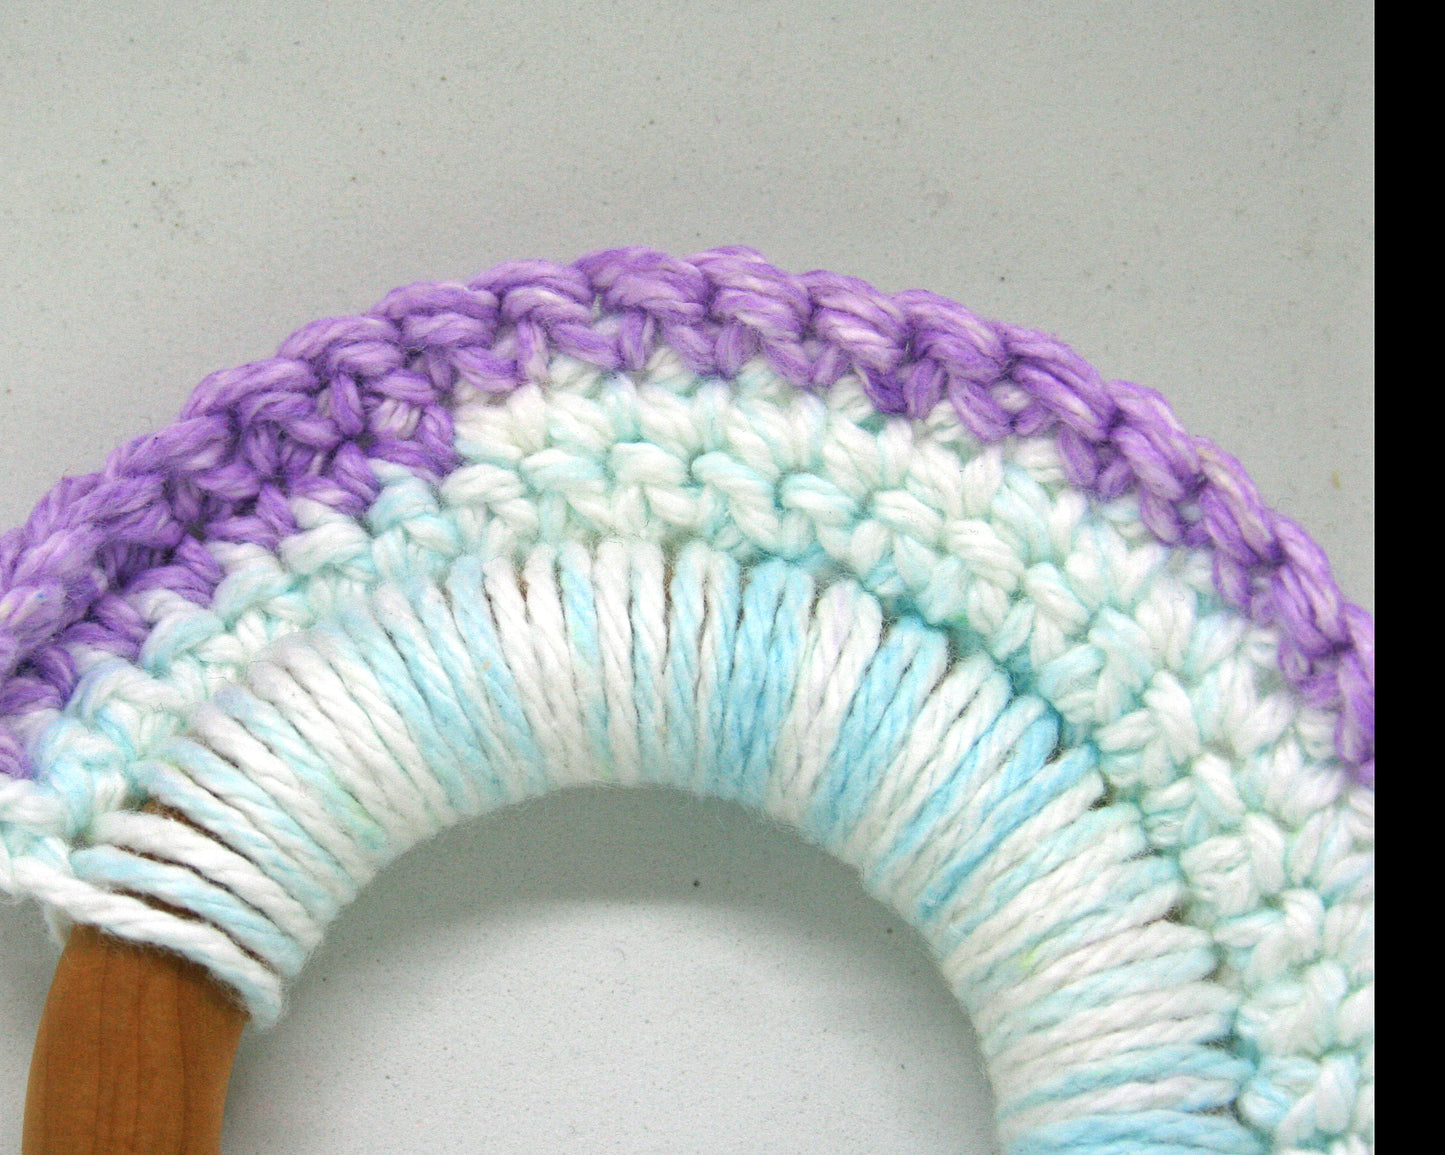 Crochet Teething Rings for Baby